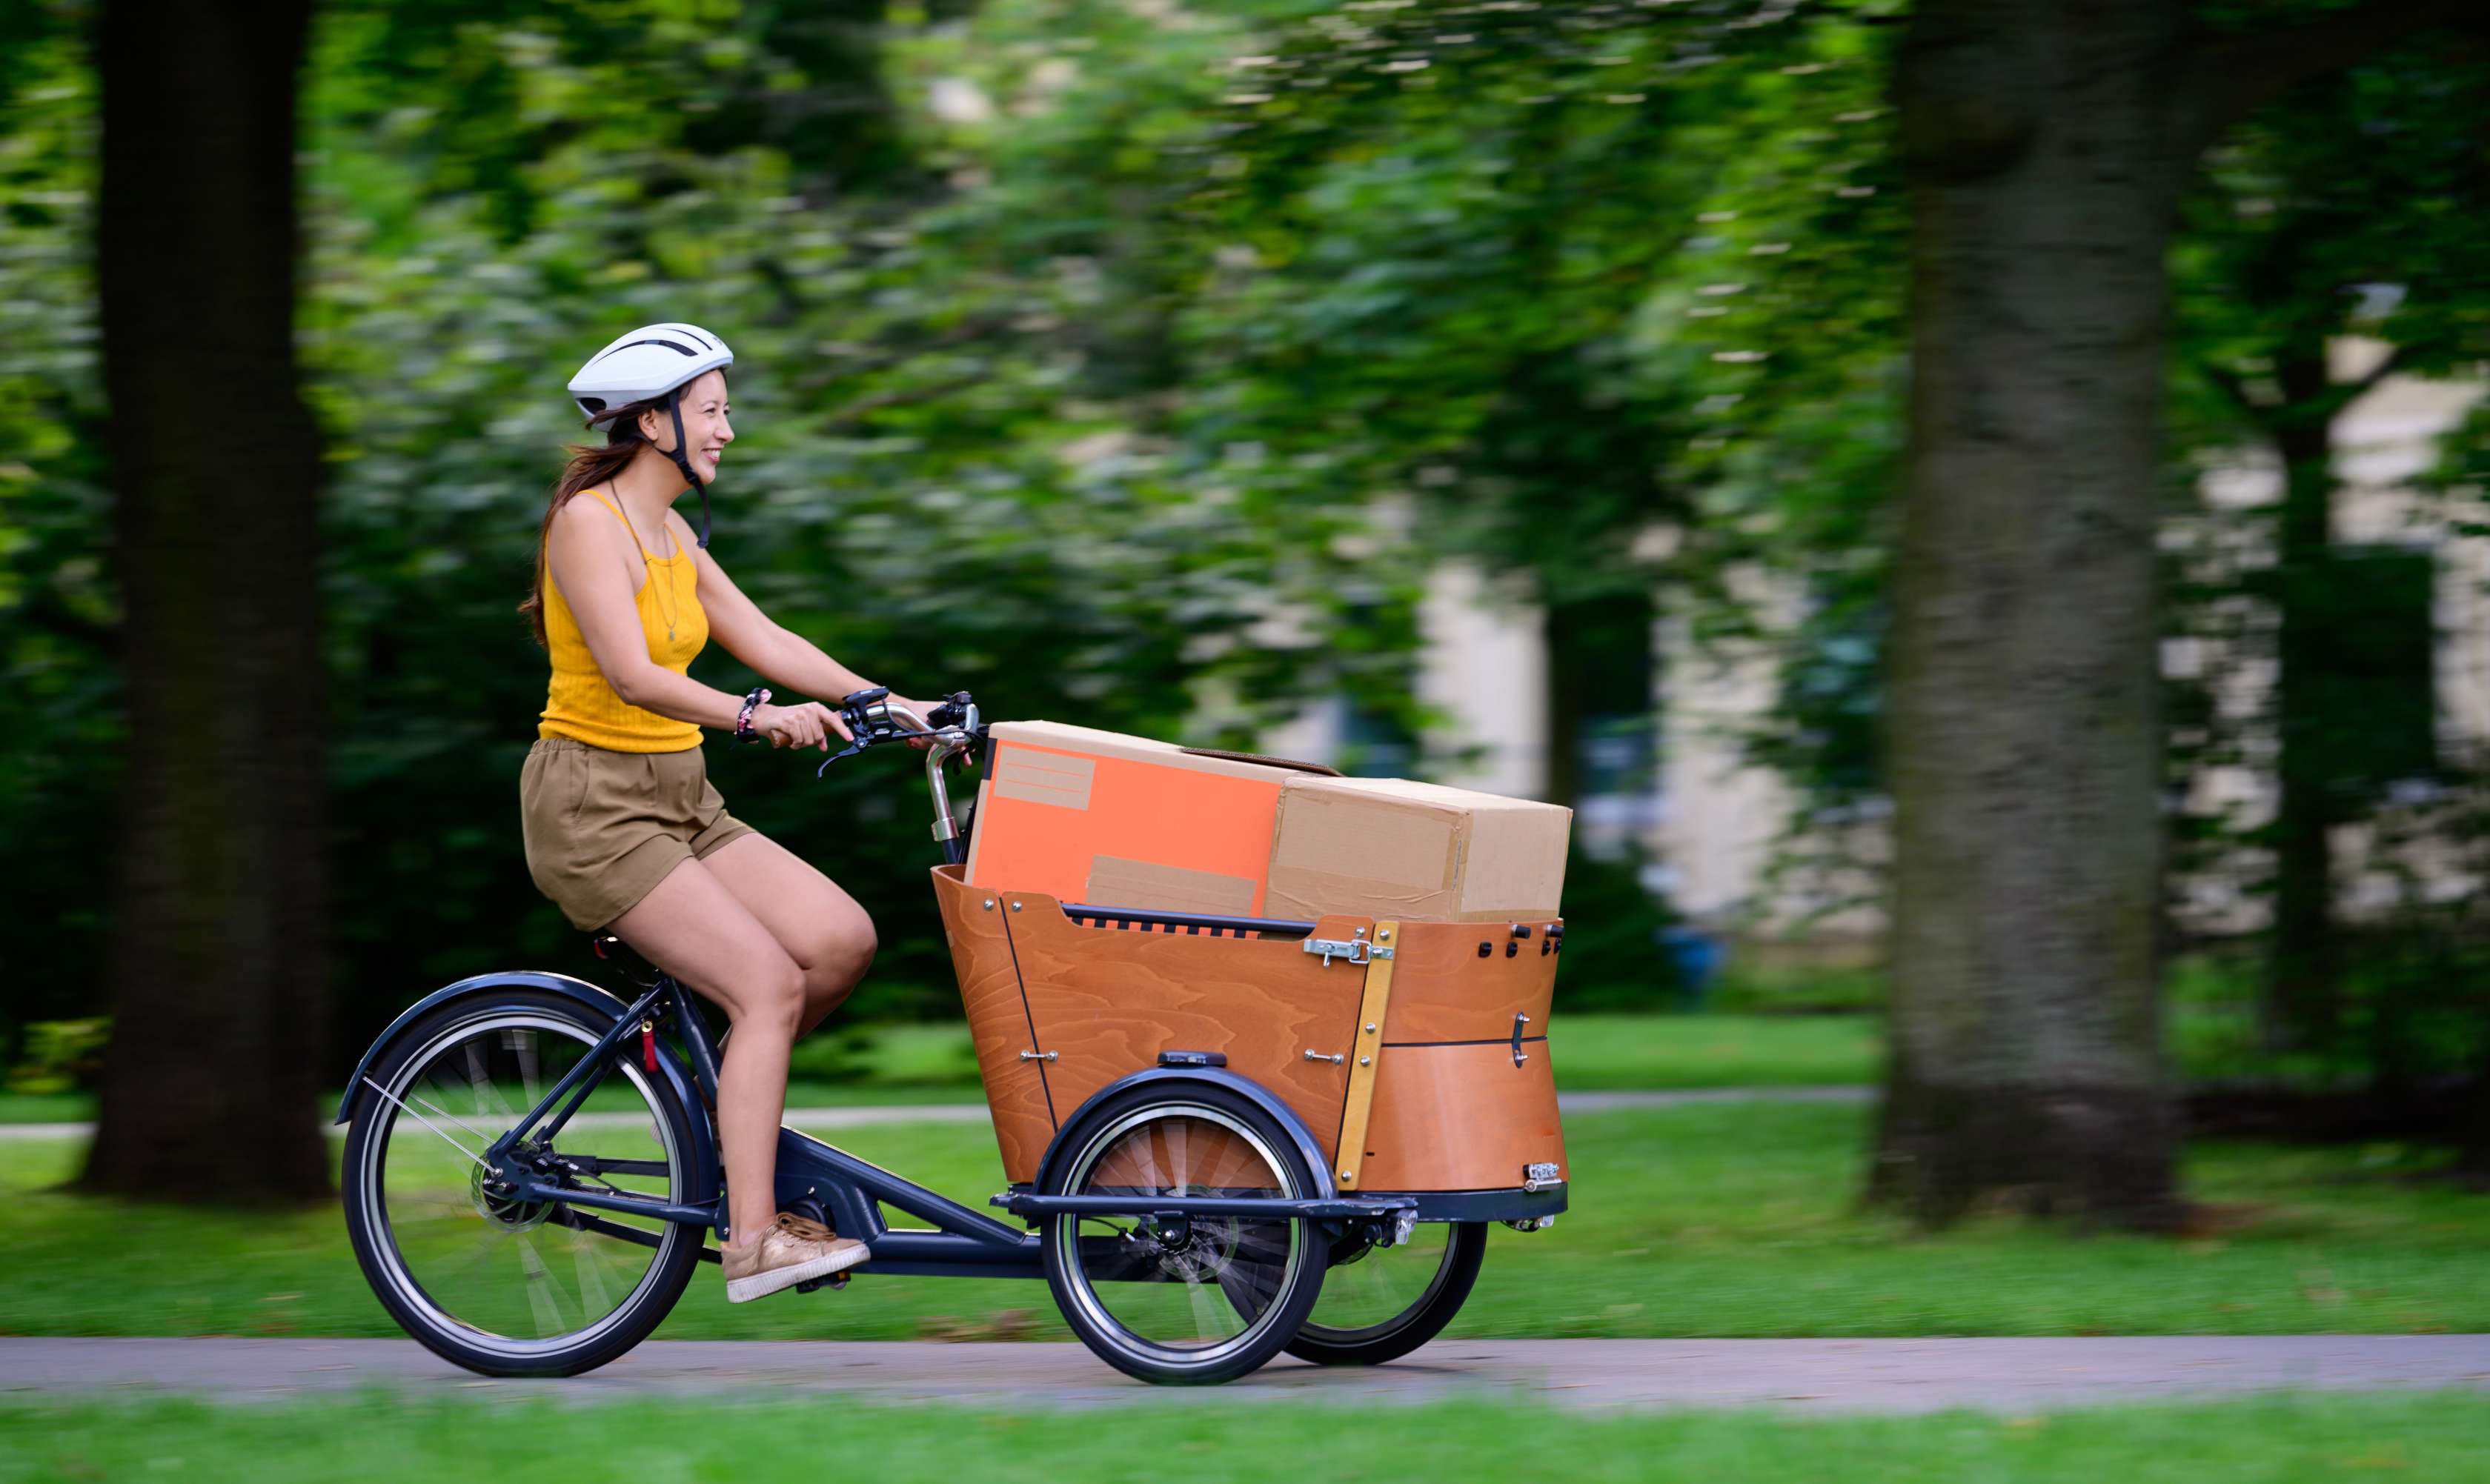 Lastenrd versichern: Eine Frau fährt mit einem Lastenrad und einem Paket durch einen Park